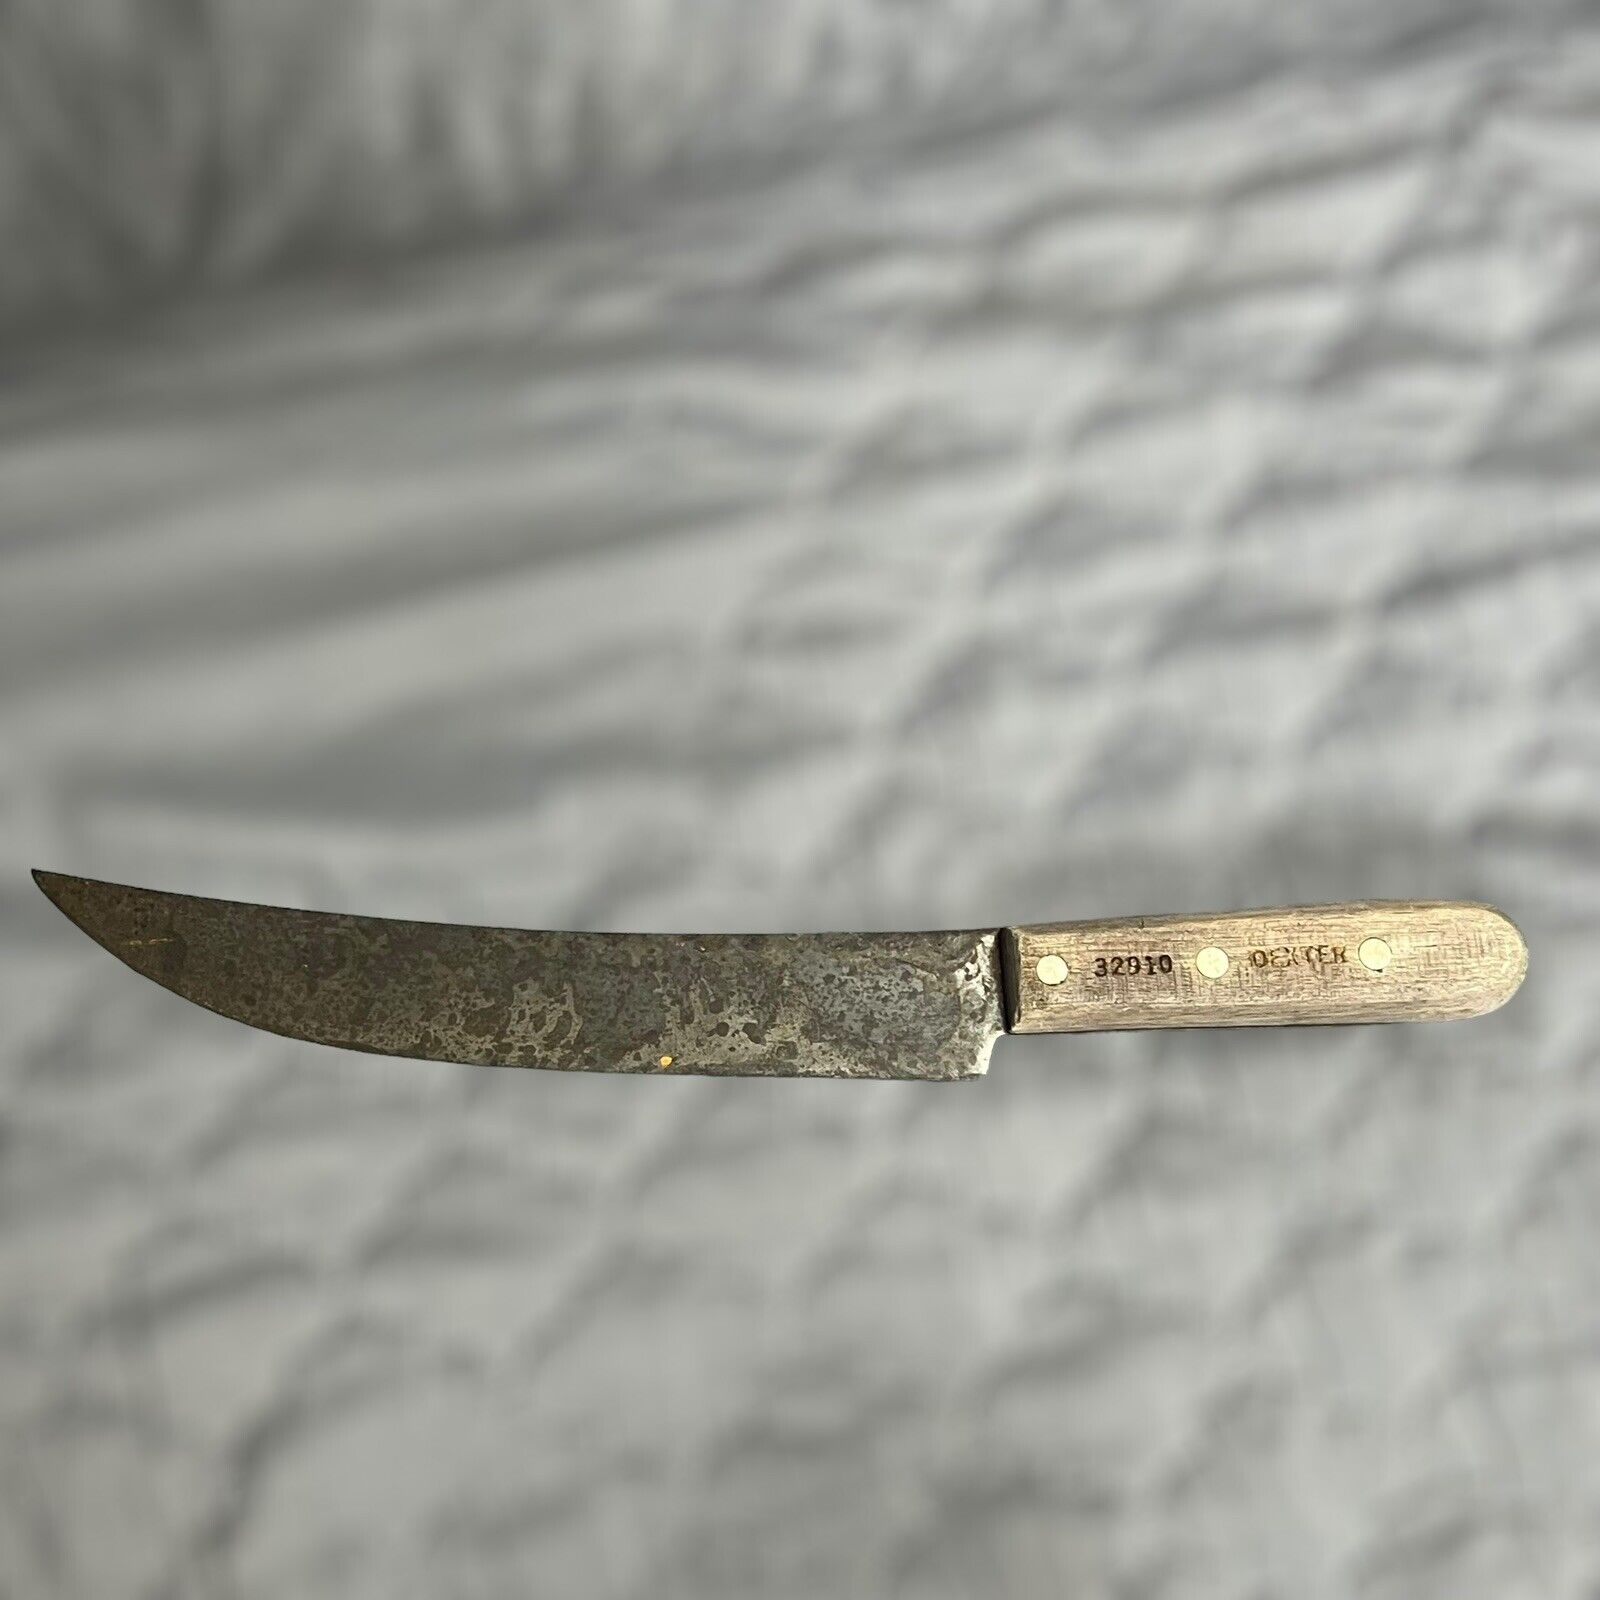 Vintage Dexter 32910 Carbon Steel Curved Chefs Cimeter butcher Breaking Knife